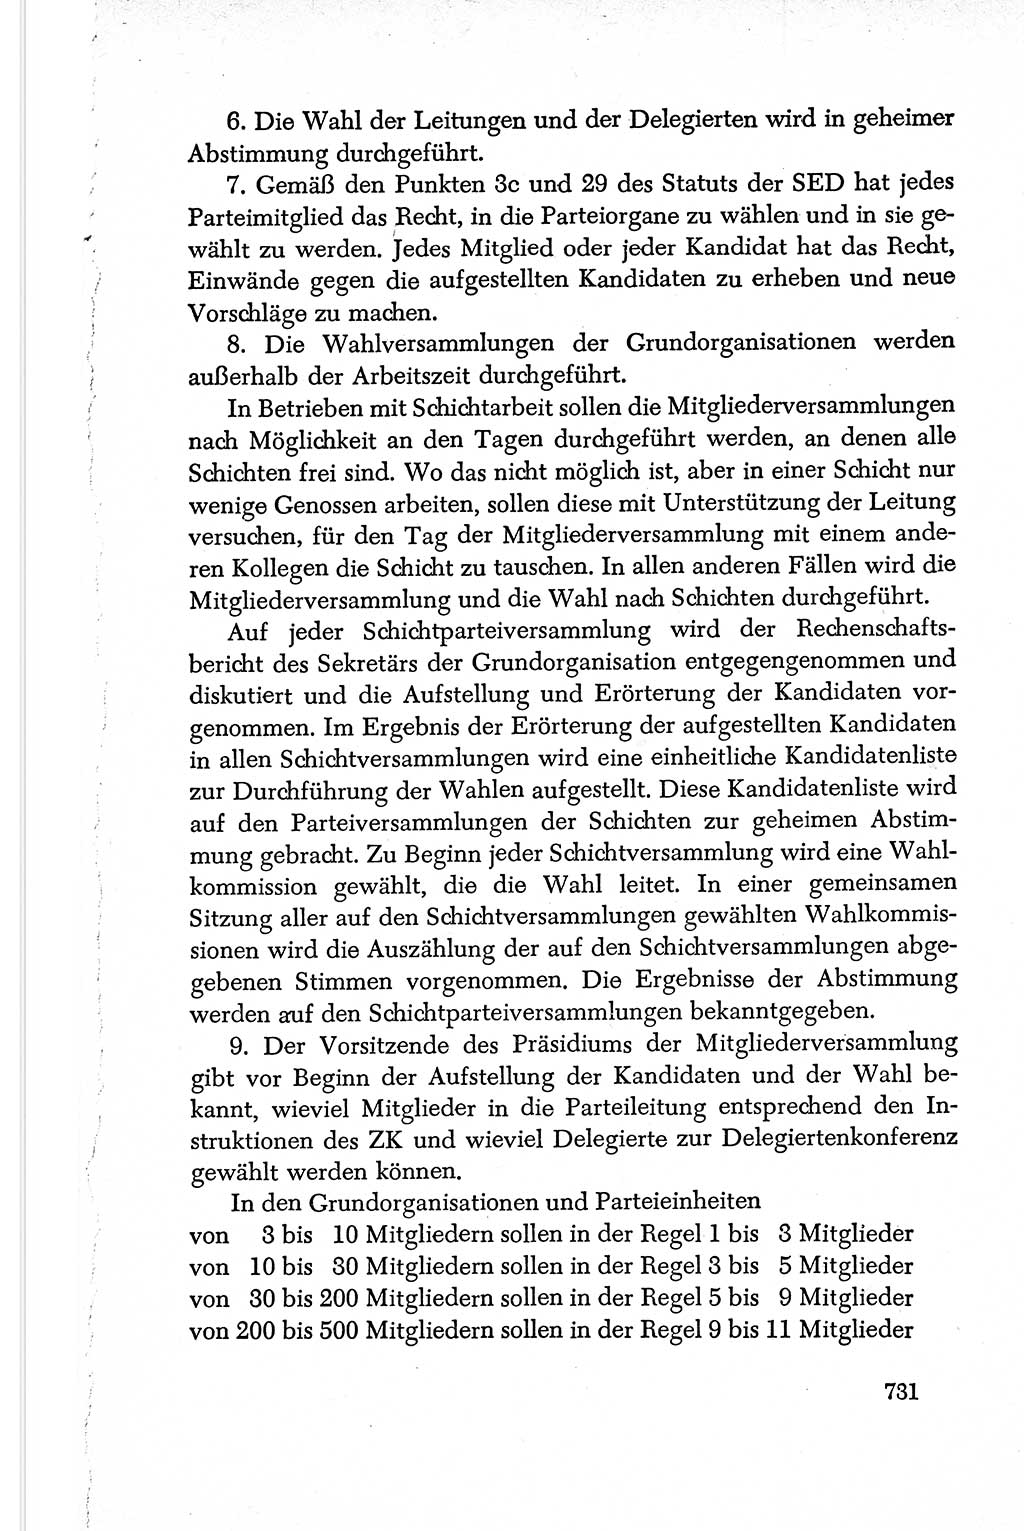 Dokumente der Sozialistischen Einheitspartei Deutschlands (SED) [Deutsche Demokratische Republik (DDR)] 1950-1952, Seite 731 (Dok. SED DDR 1950-1952, S. 731)